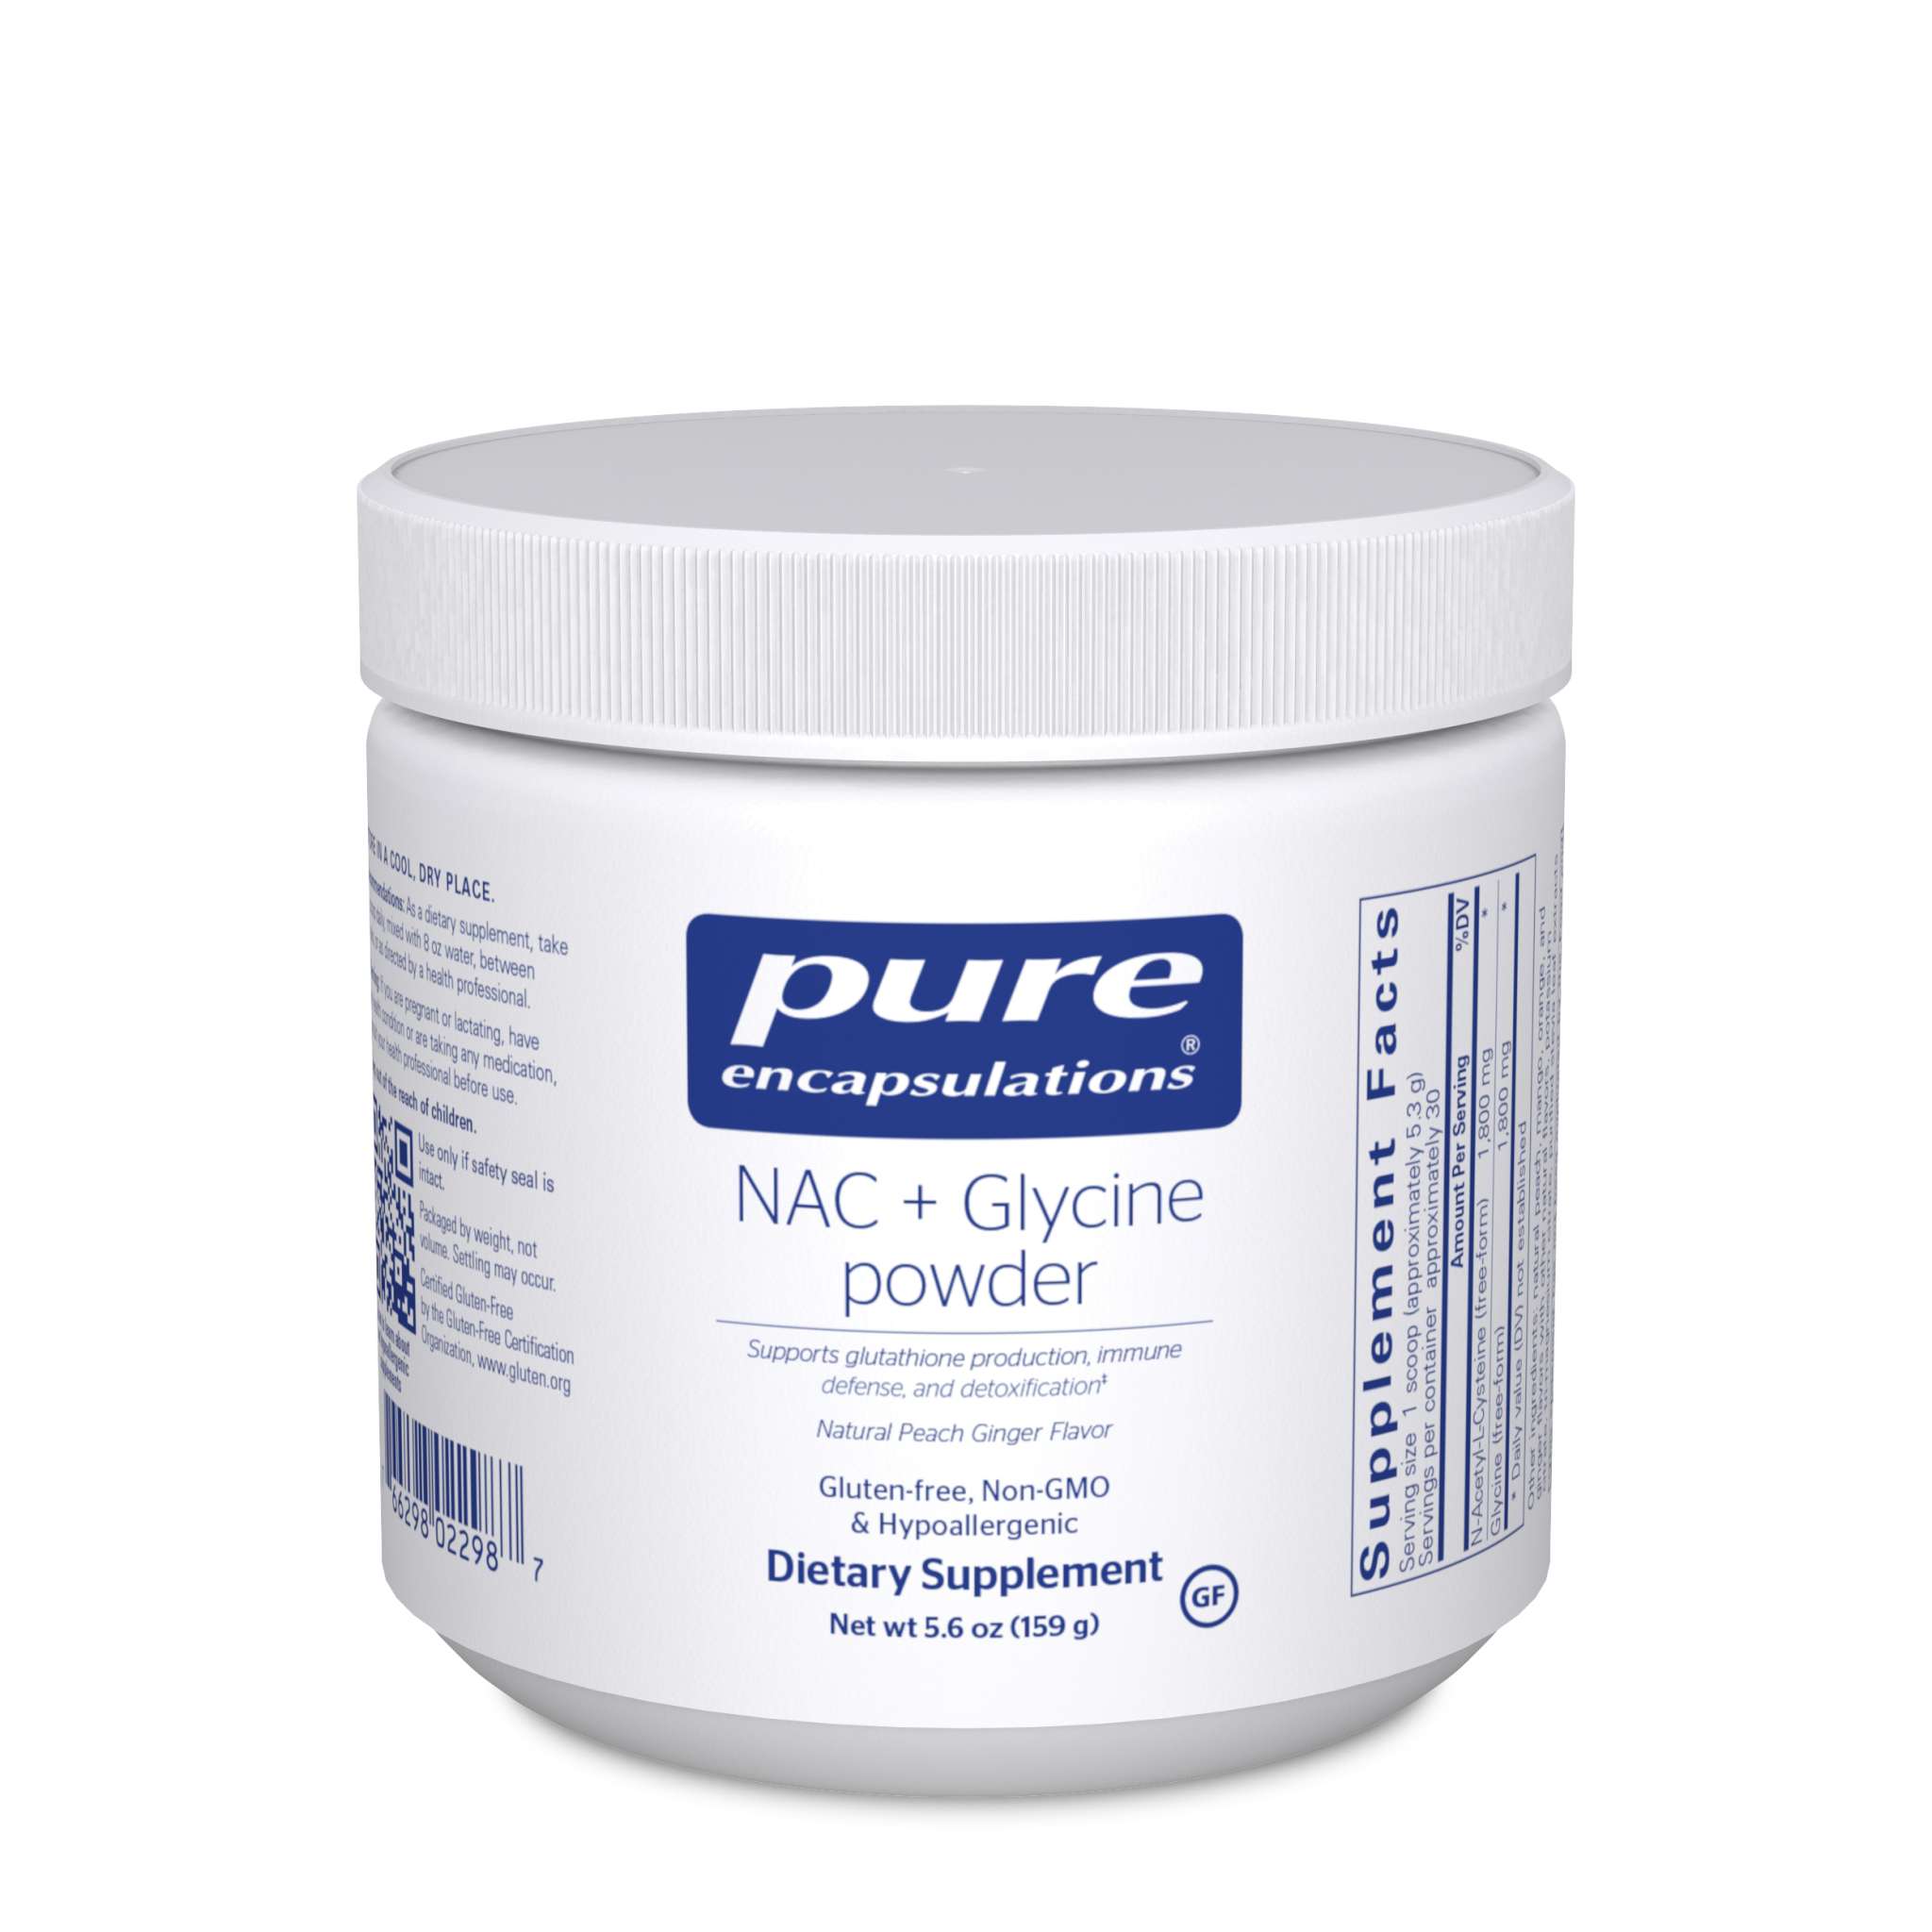 Pure Encapsulations - N A C + Glycine powder